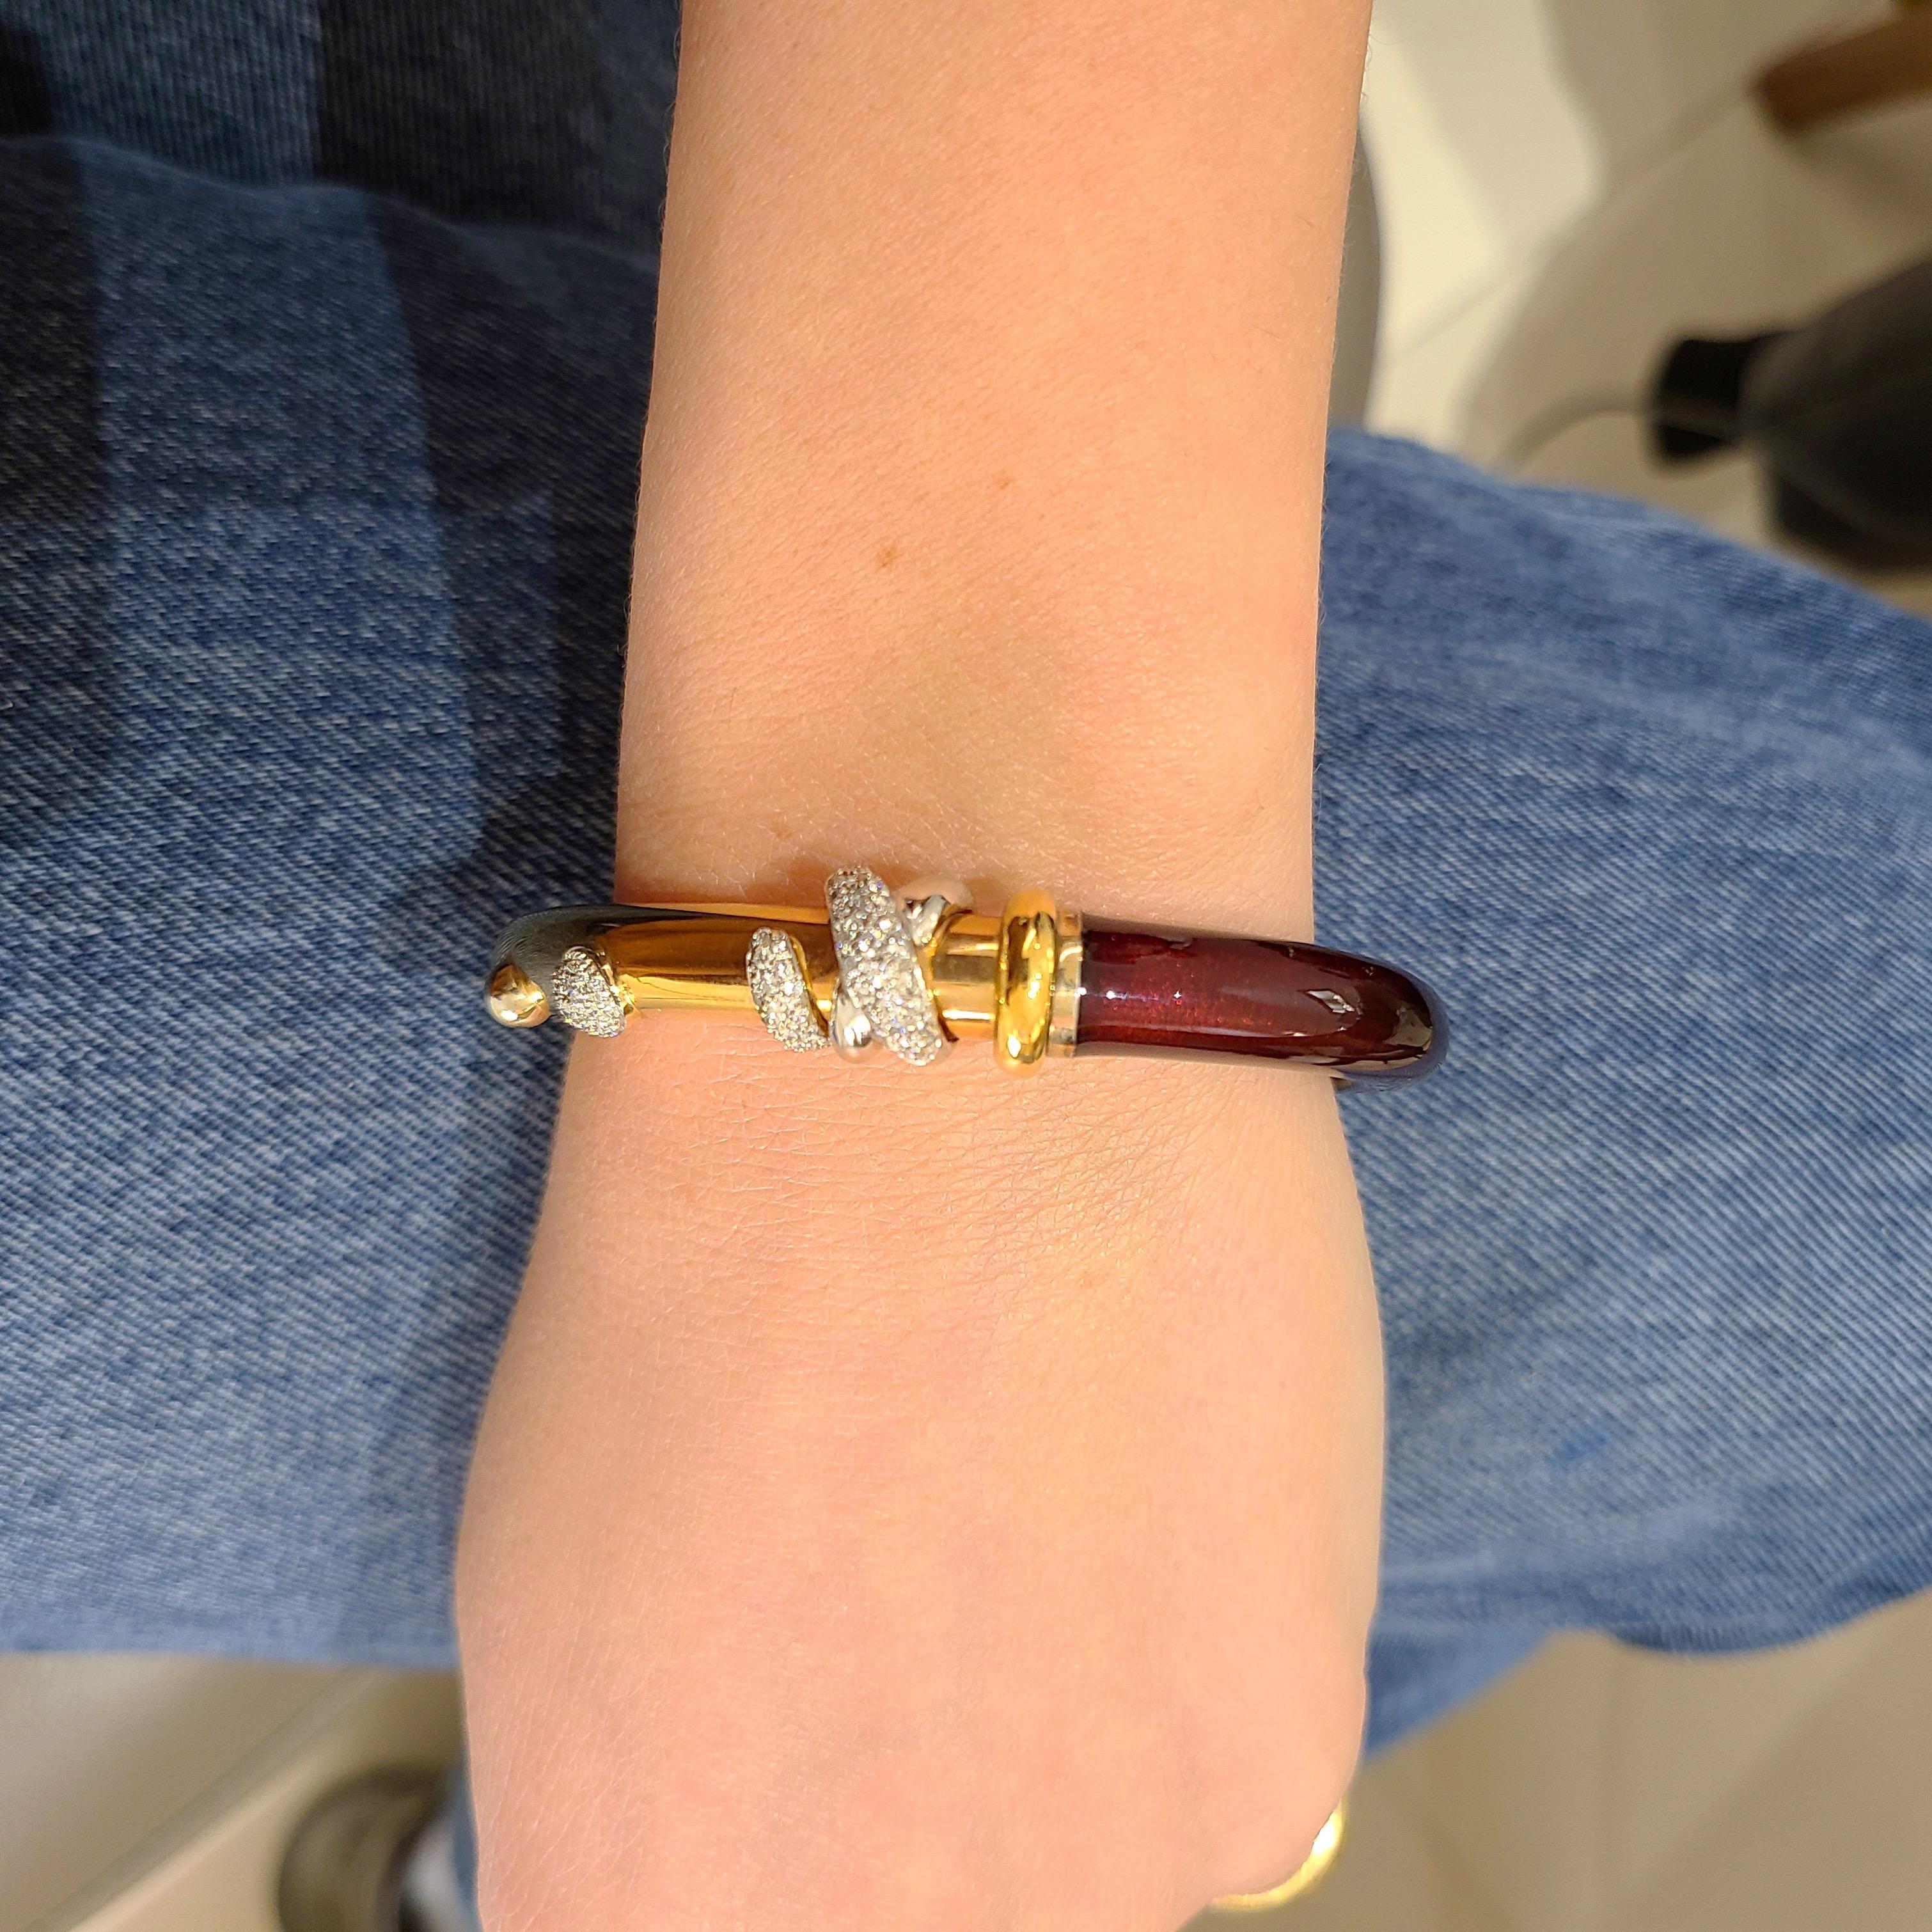 Ce site  Le bracelet en or rose 18 carats est conçu par la société italienne de renommée mondiale La Nouvelle Bague. Ils sont connus pour leur savoir-faire exquis, mariant le classique et le moderne.
Le bracelet est conçu avec de l'émail bordeaux et